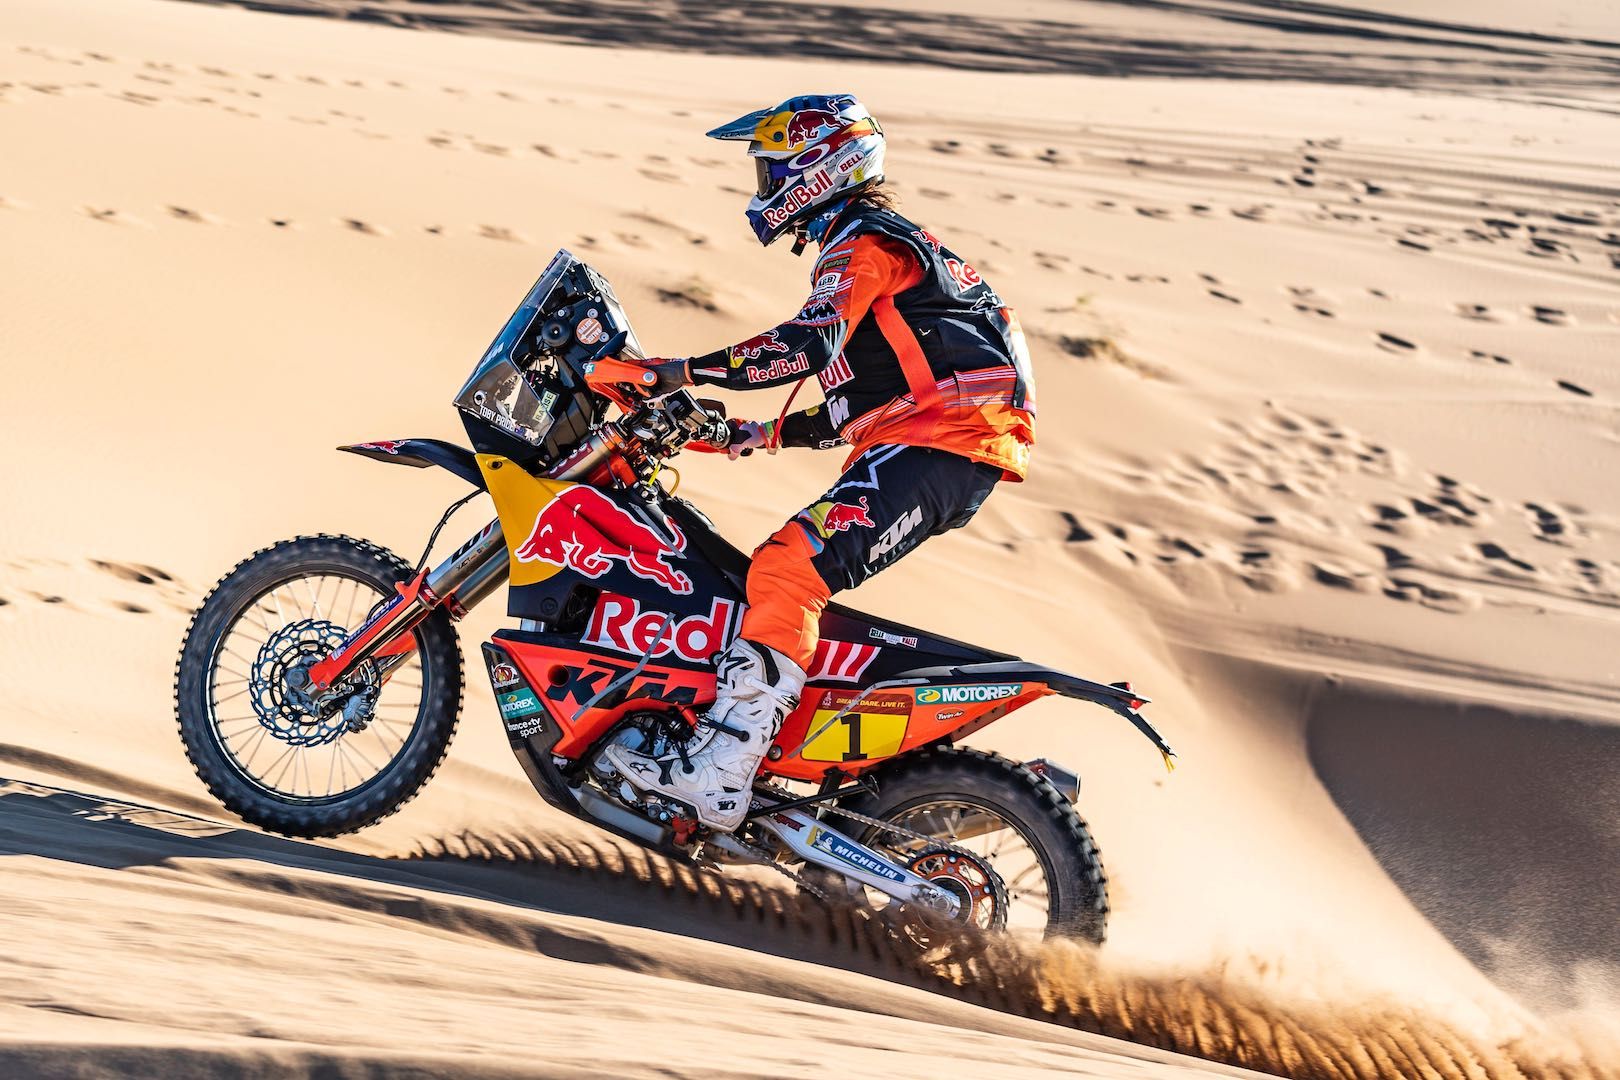 Red Bull rider in the desert